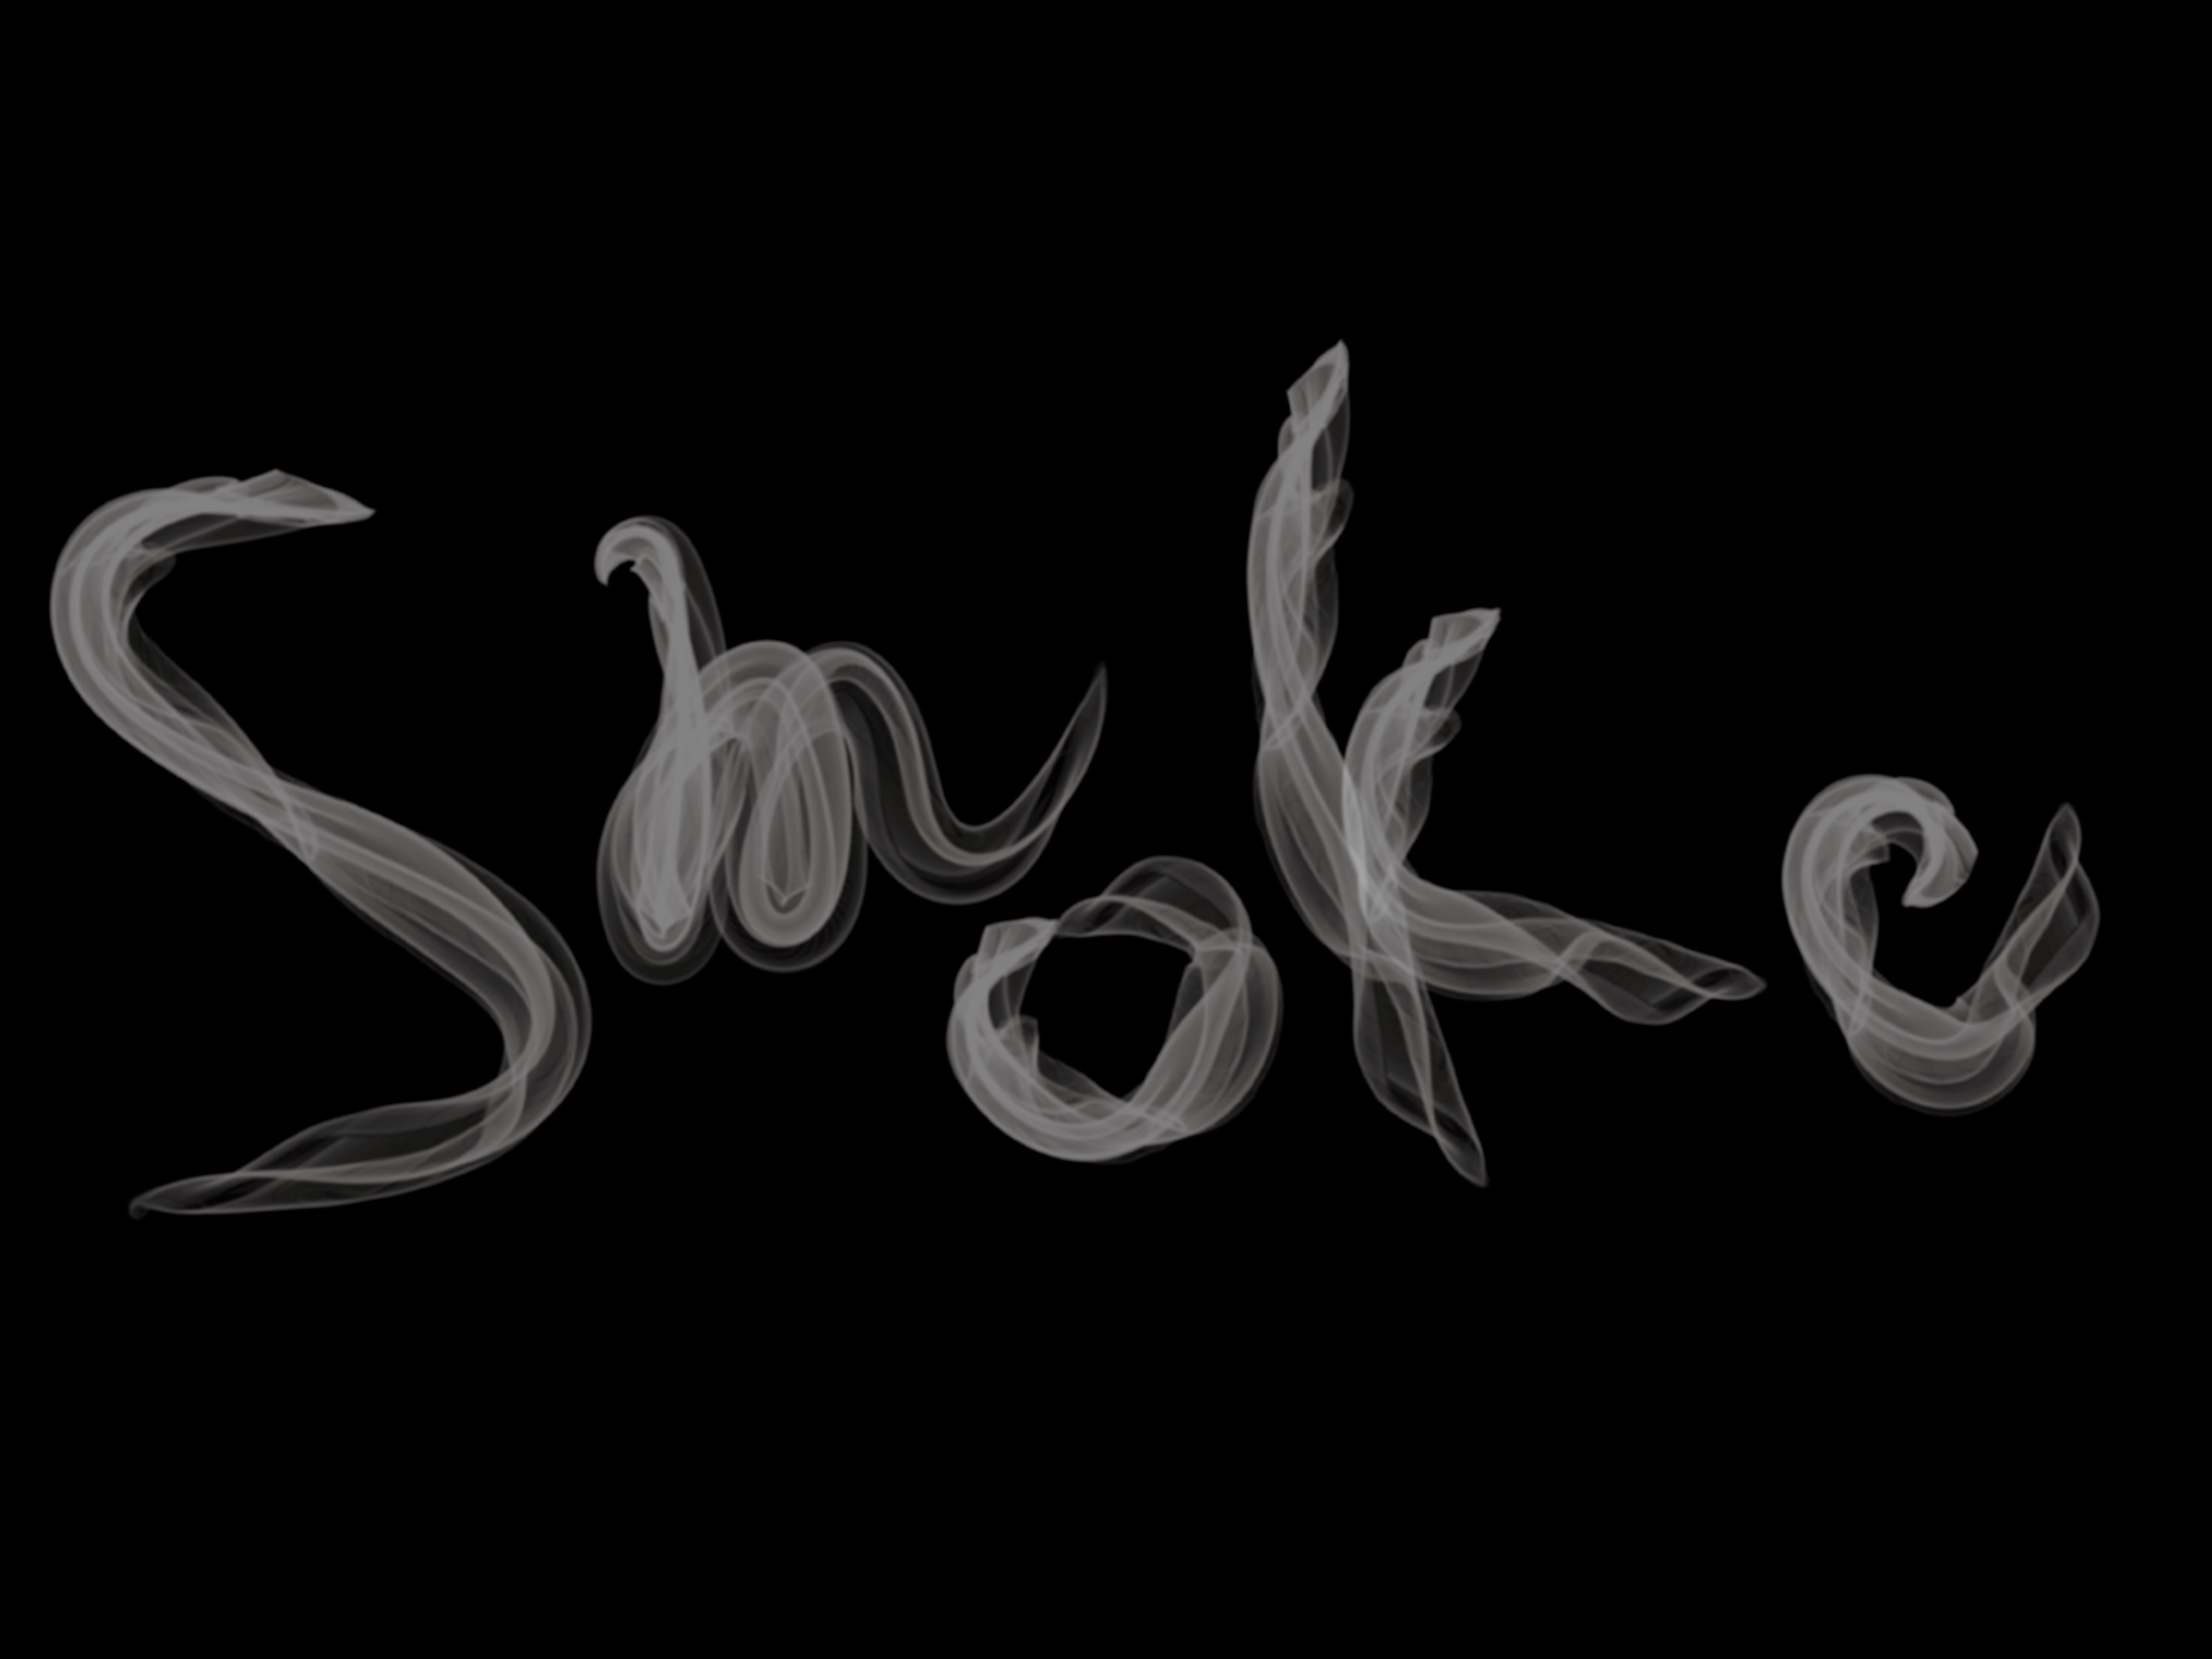 Illustratorで煙のようなアートブラシを作ってみた Wandわんど